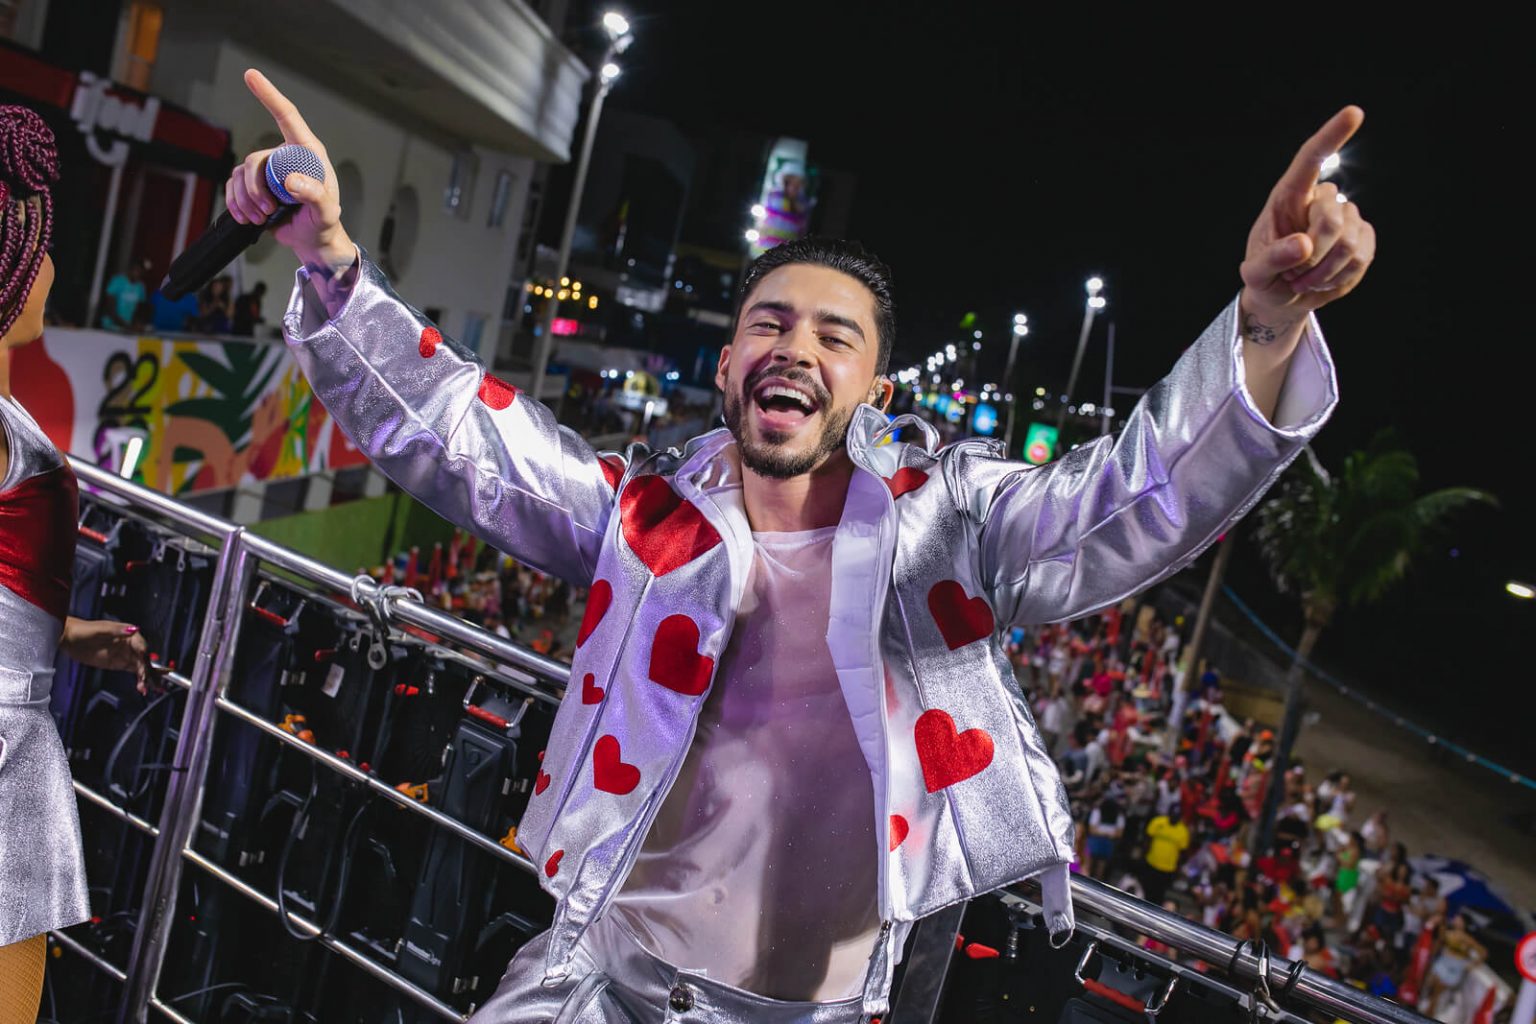 Papazoni arrasta multidão com hit “Eu Tive Um Amor”, no circuito Barra Ondina 7